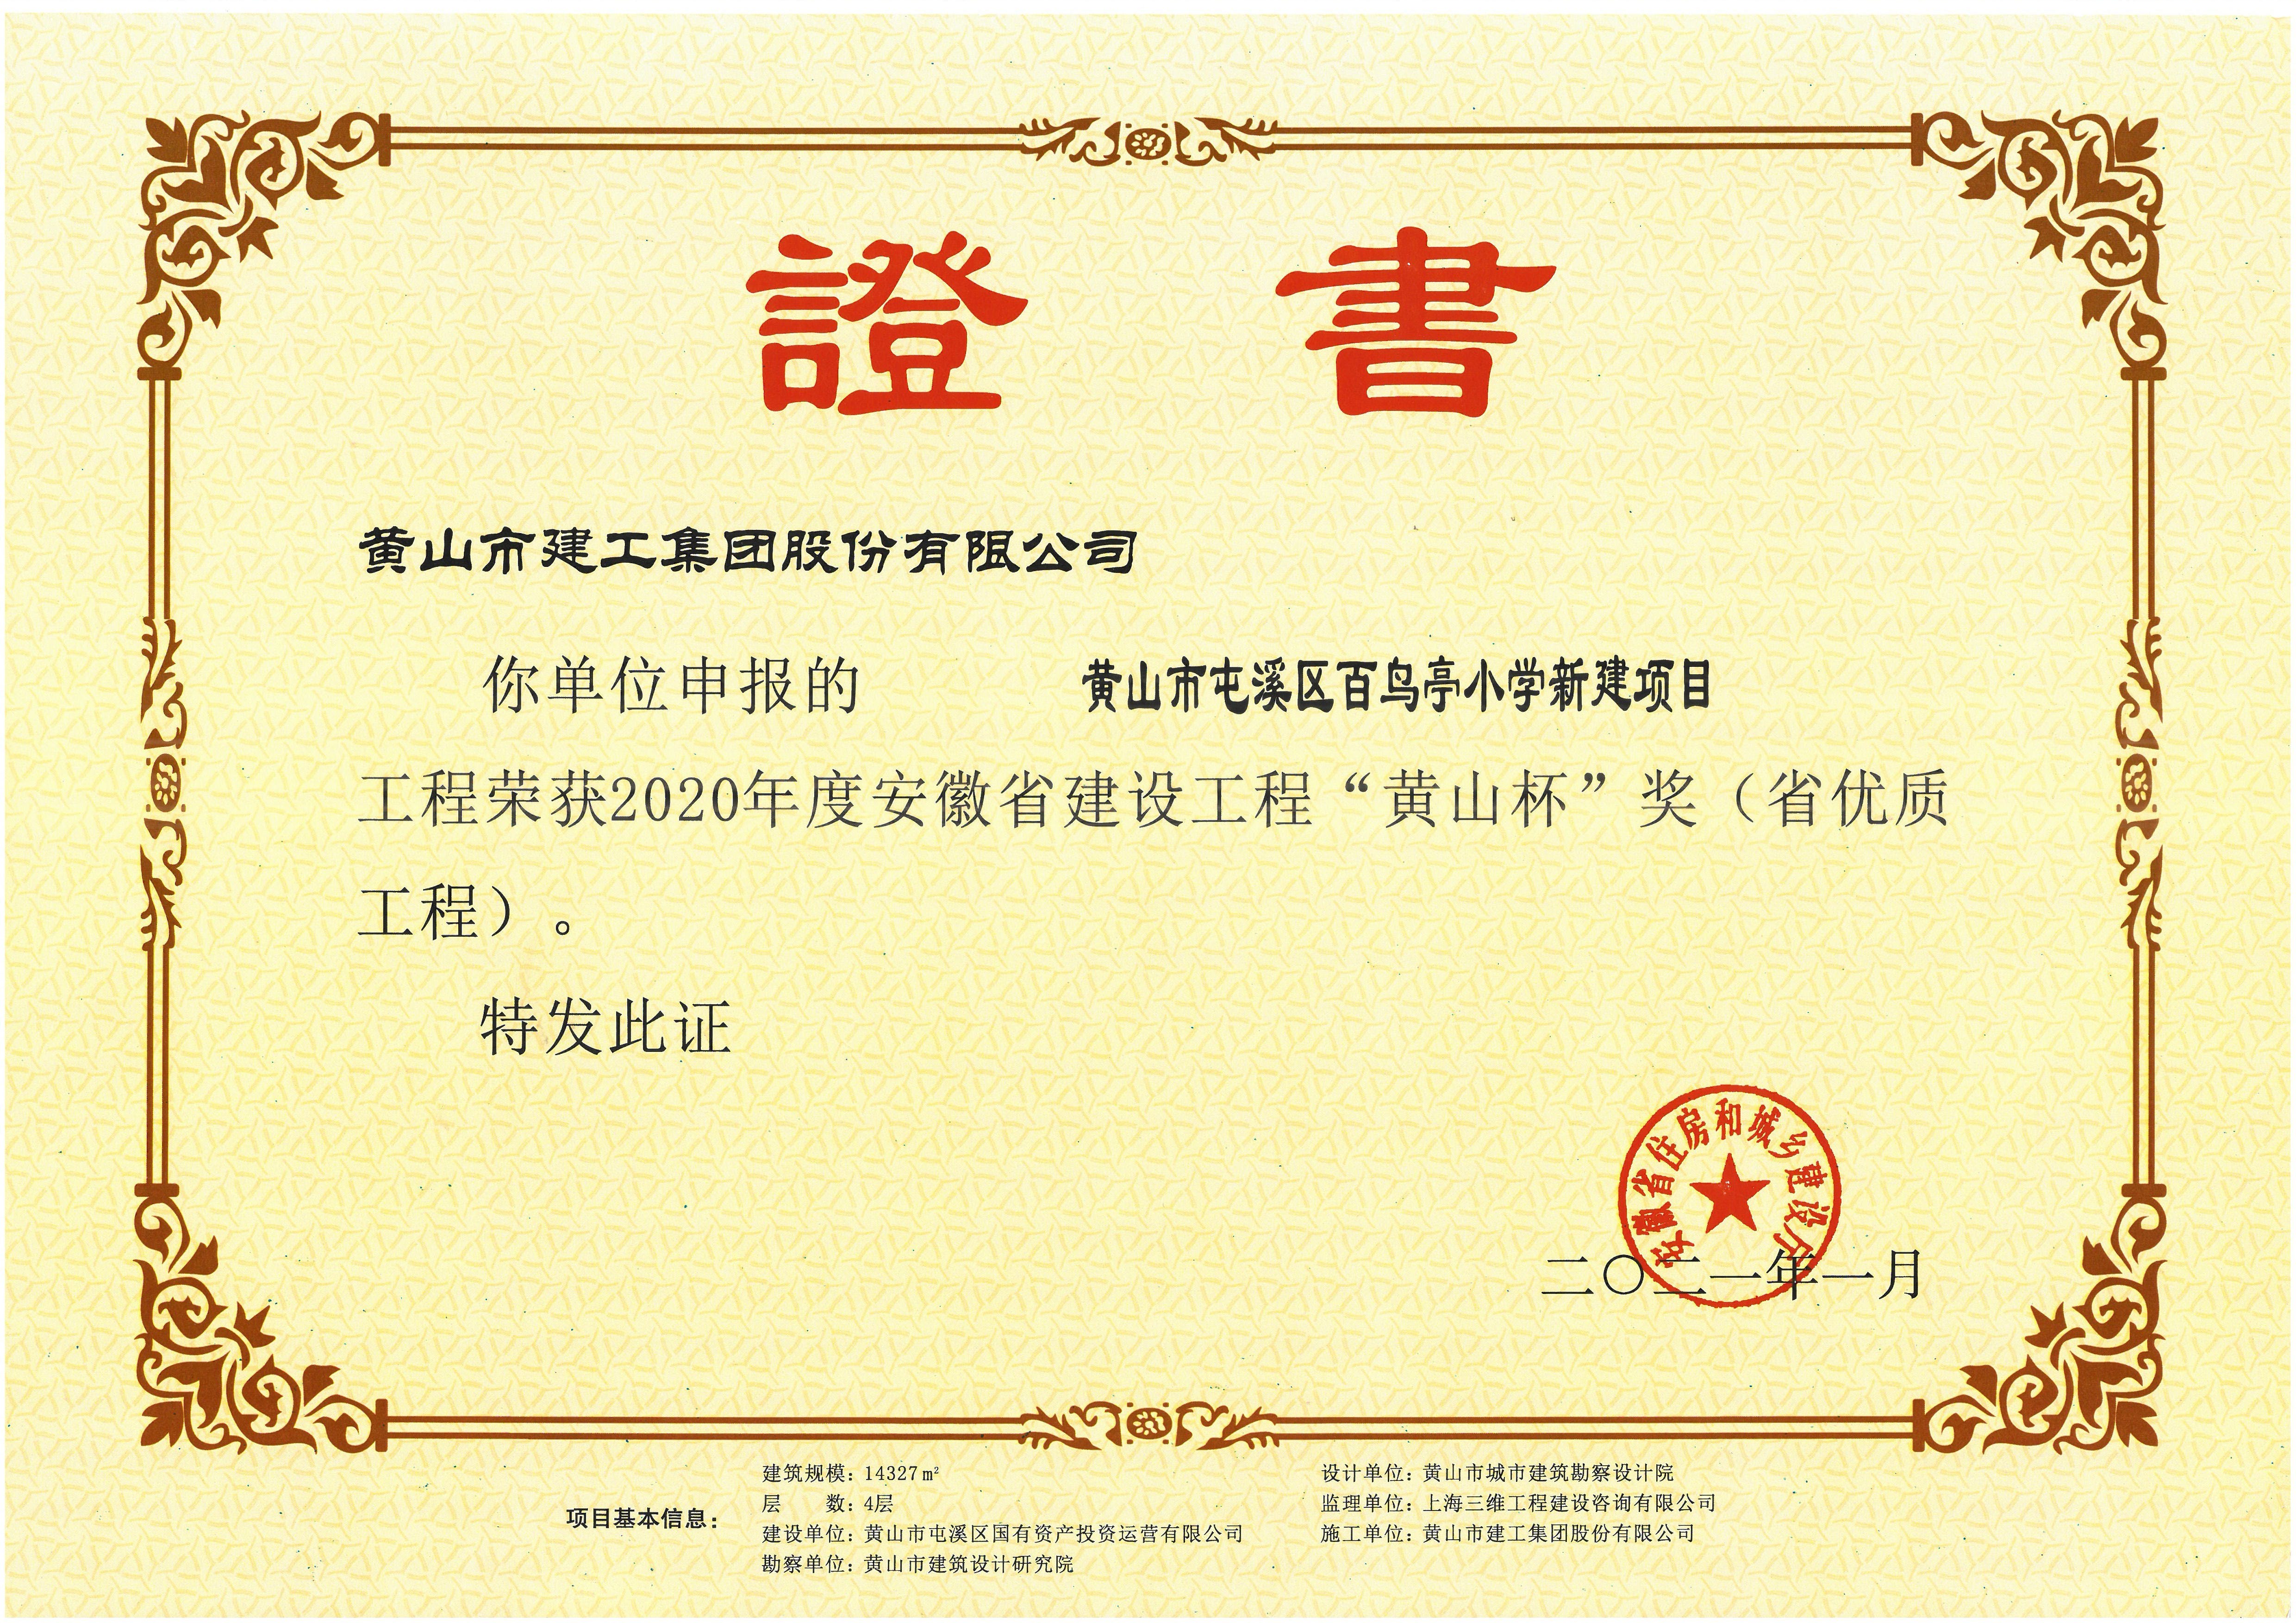 2021年度安徽省建設工程“黃山杯”獎